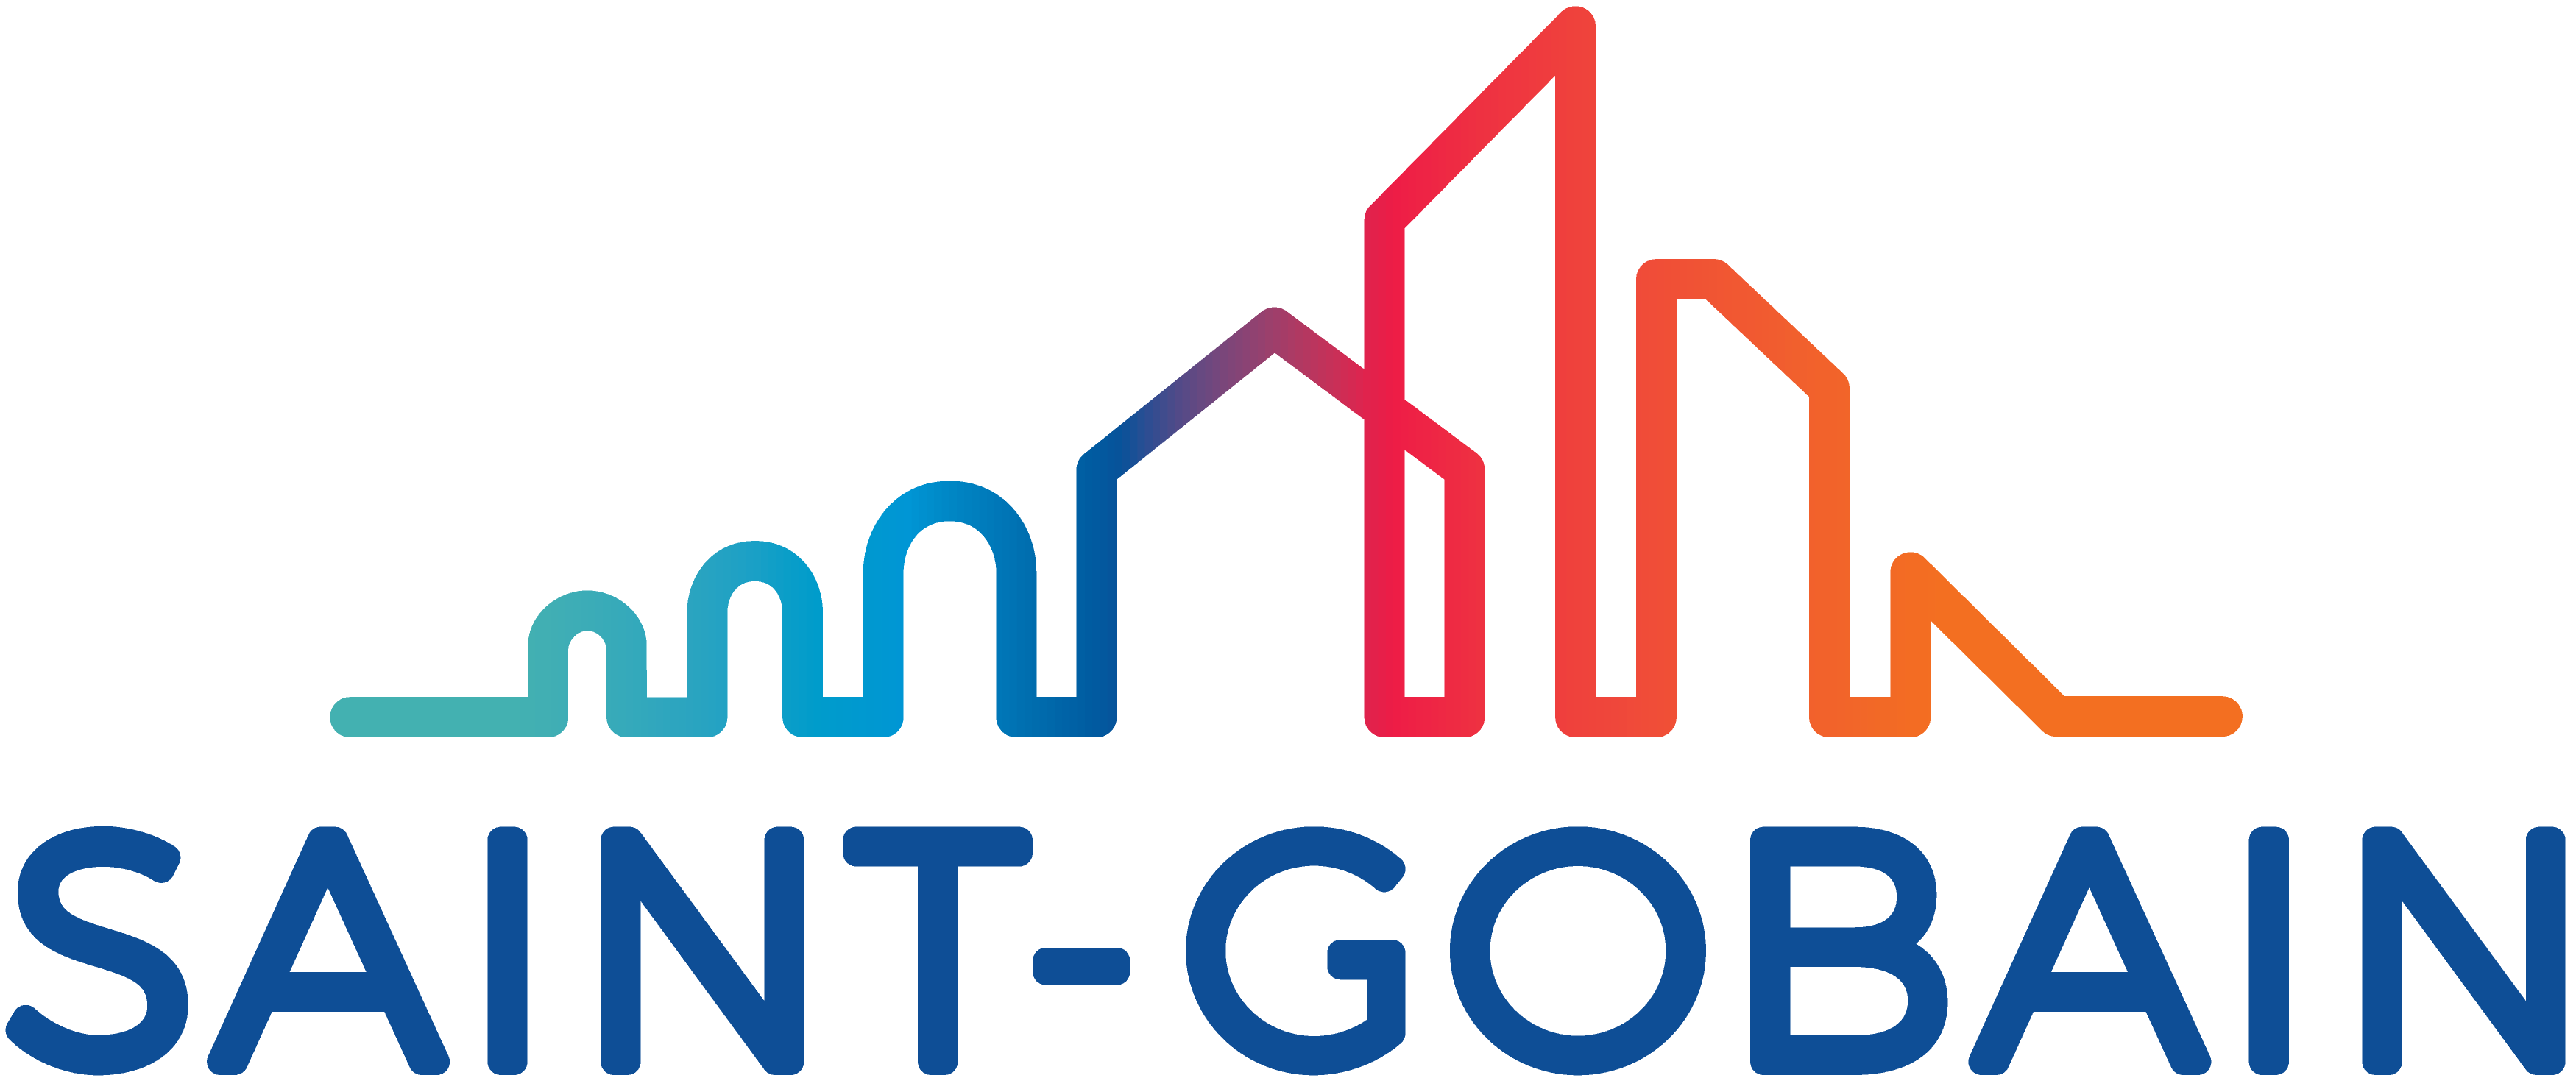 Saint gobain logo